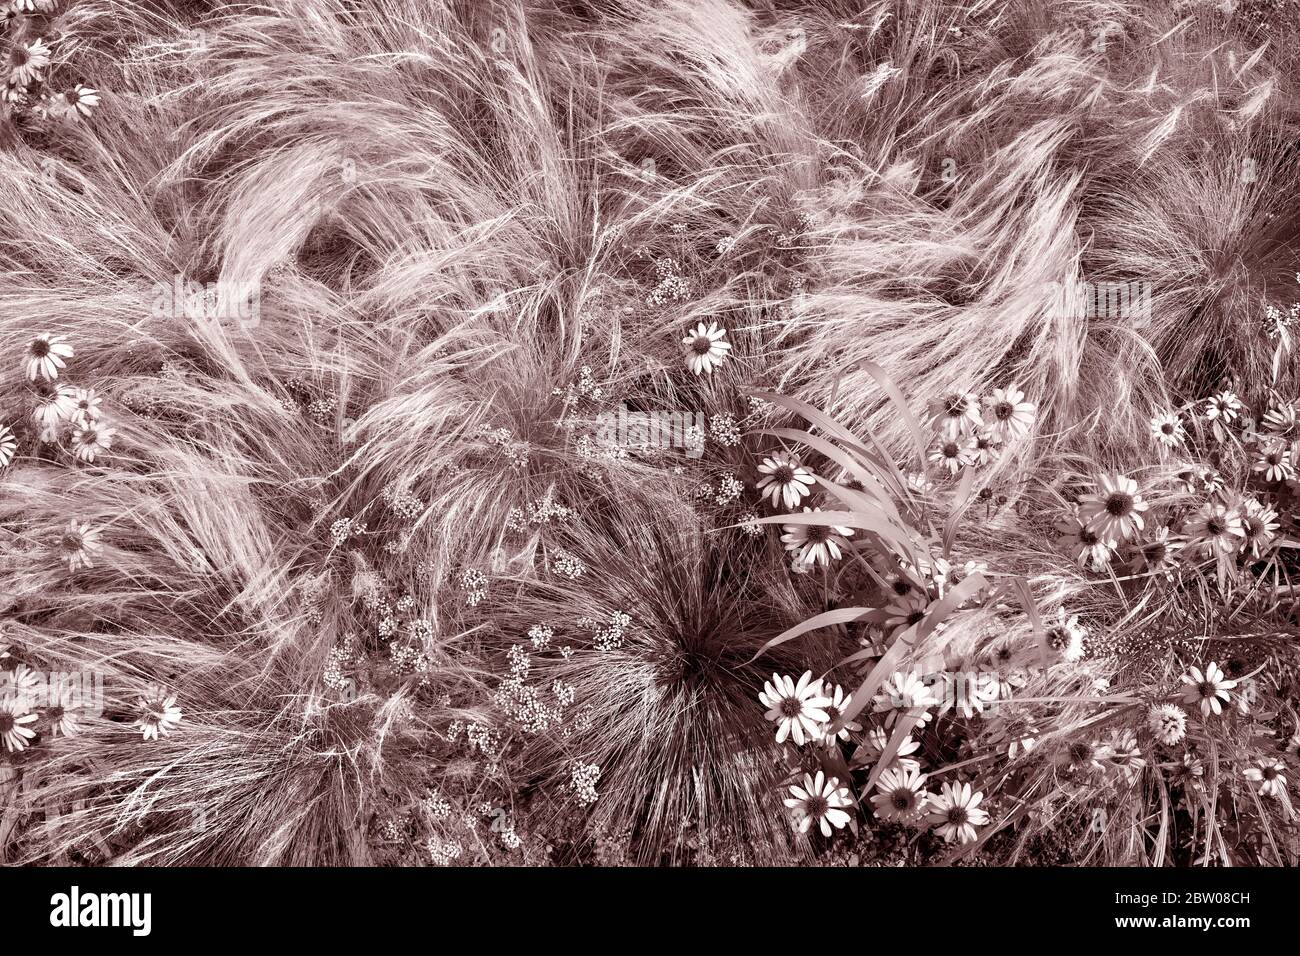 Herbes sauvages et fleurs sauvages en photographie horizontale pour le concept de fond. Cadre complet de graminées soufflées par le vent. Banque D'Images